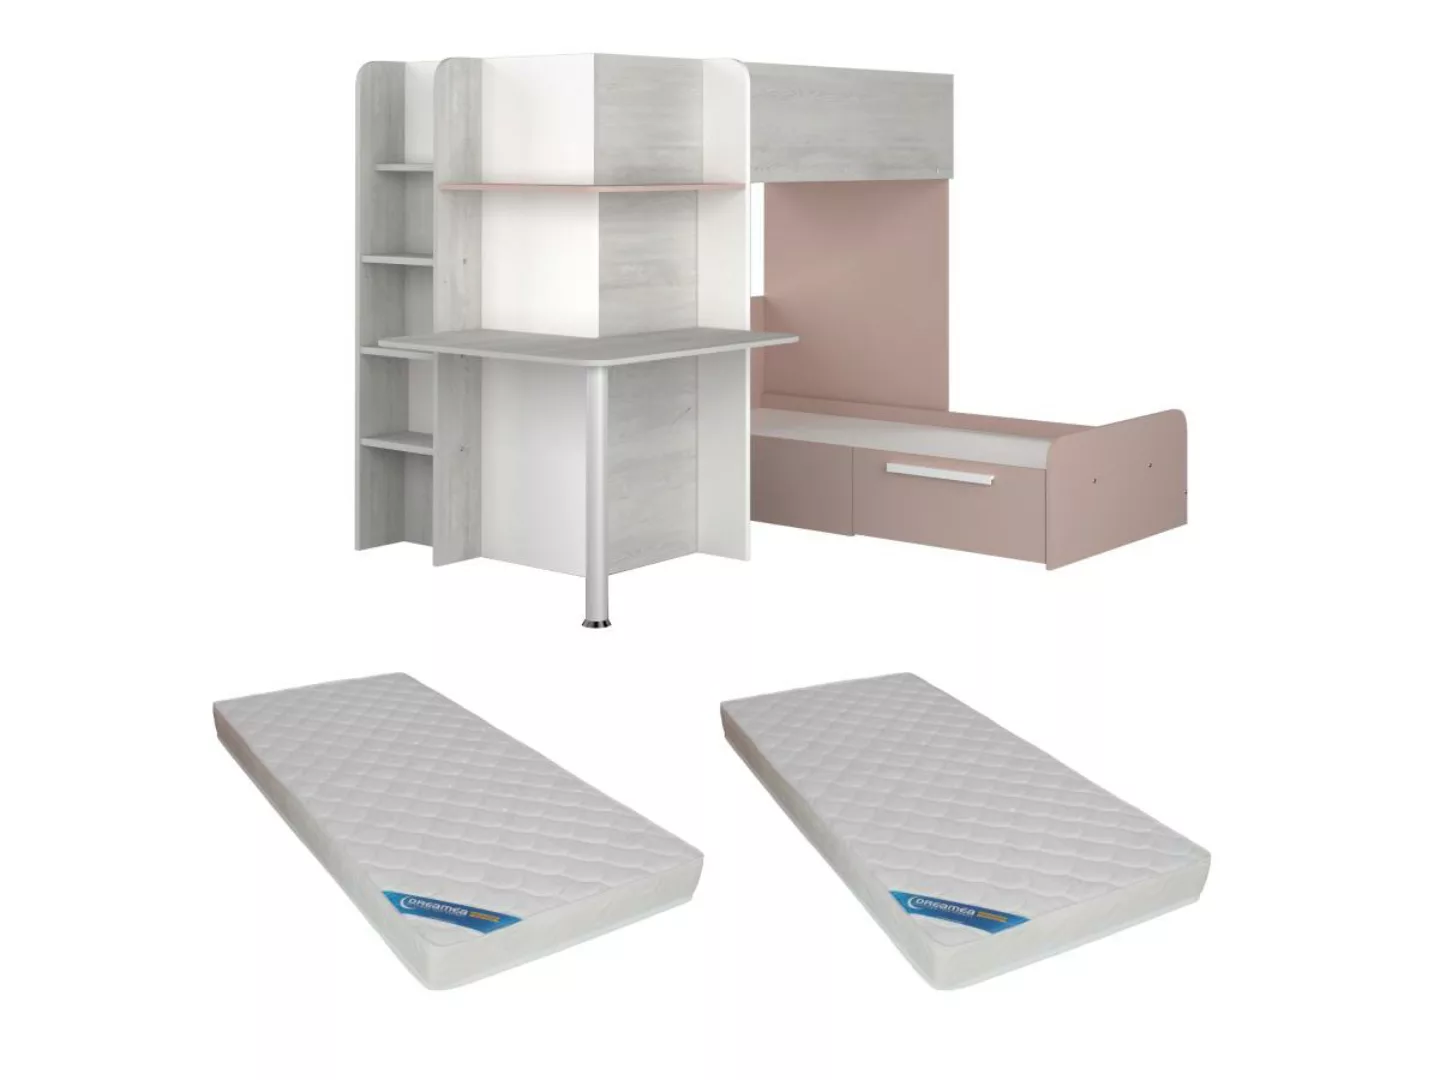 Eck-Hochbett - 2 x 90 x 190 cm - Mit Schreibtisch - Grau, weiß & rosa + Mat günstig online kaufen